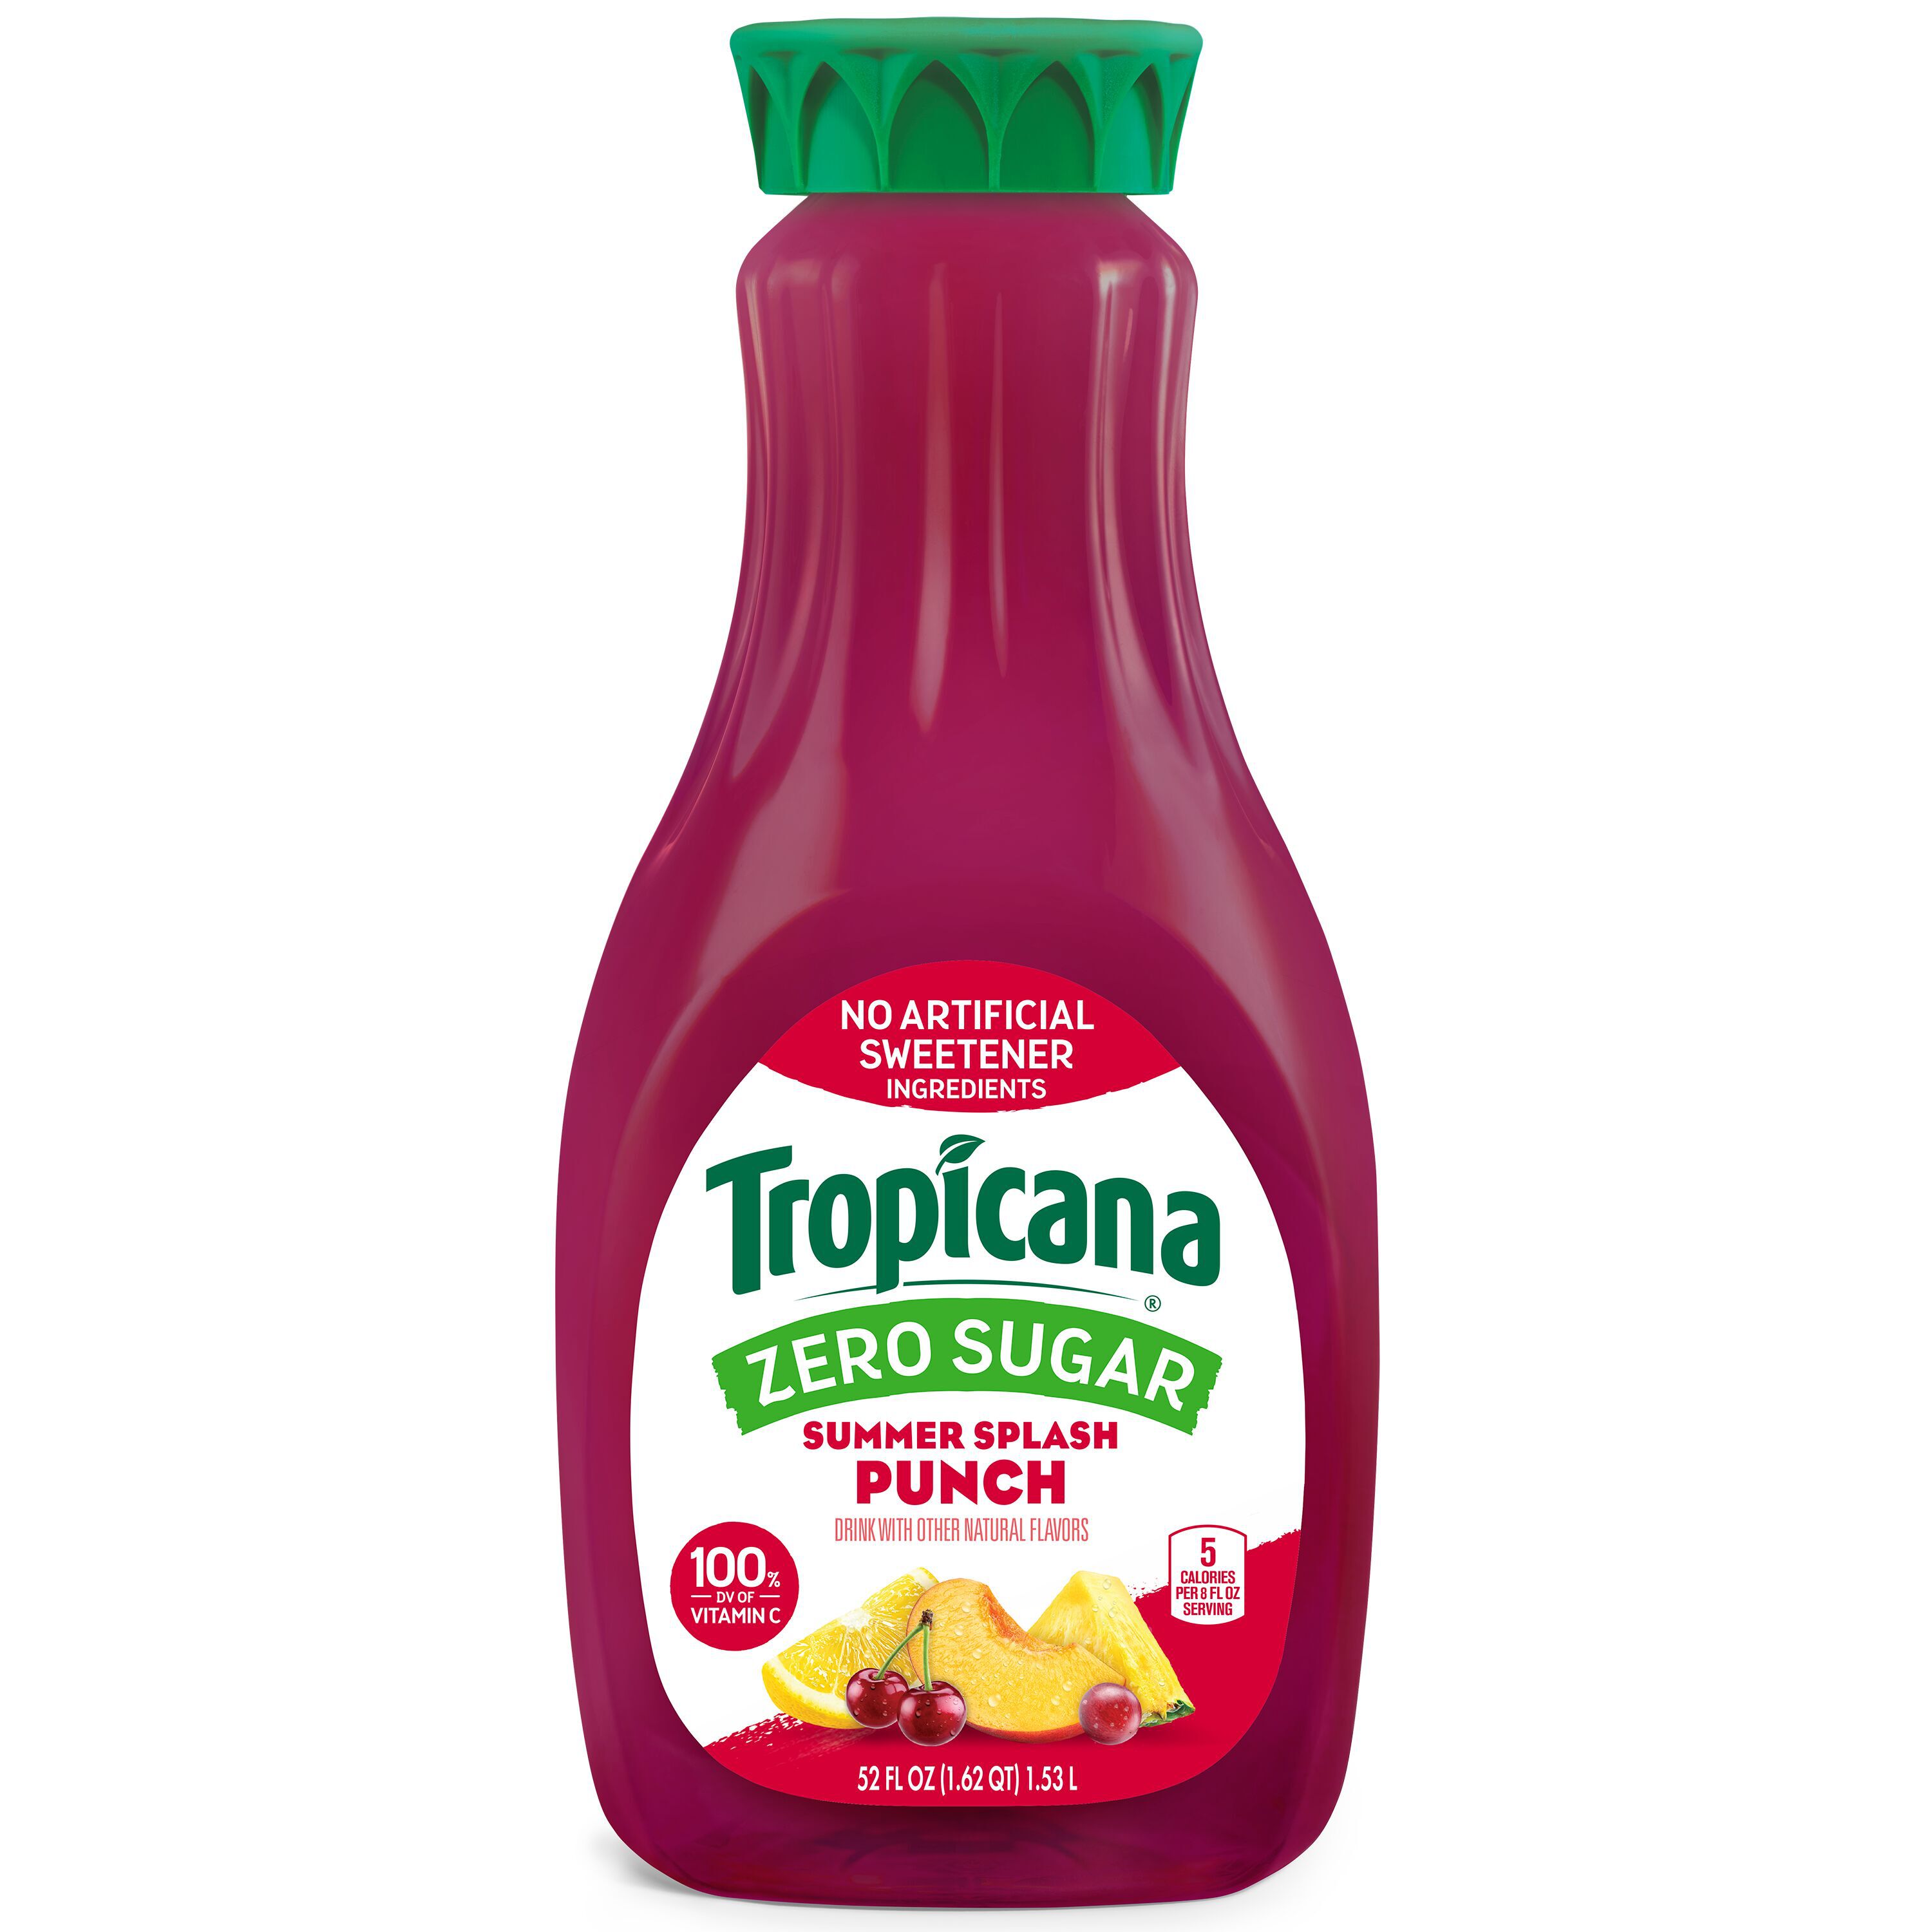 Tropicana, Zero Sugar, Summer Splash Punch Drink - SmartLabel™